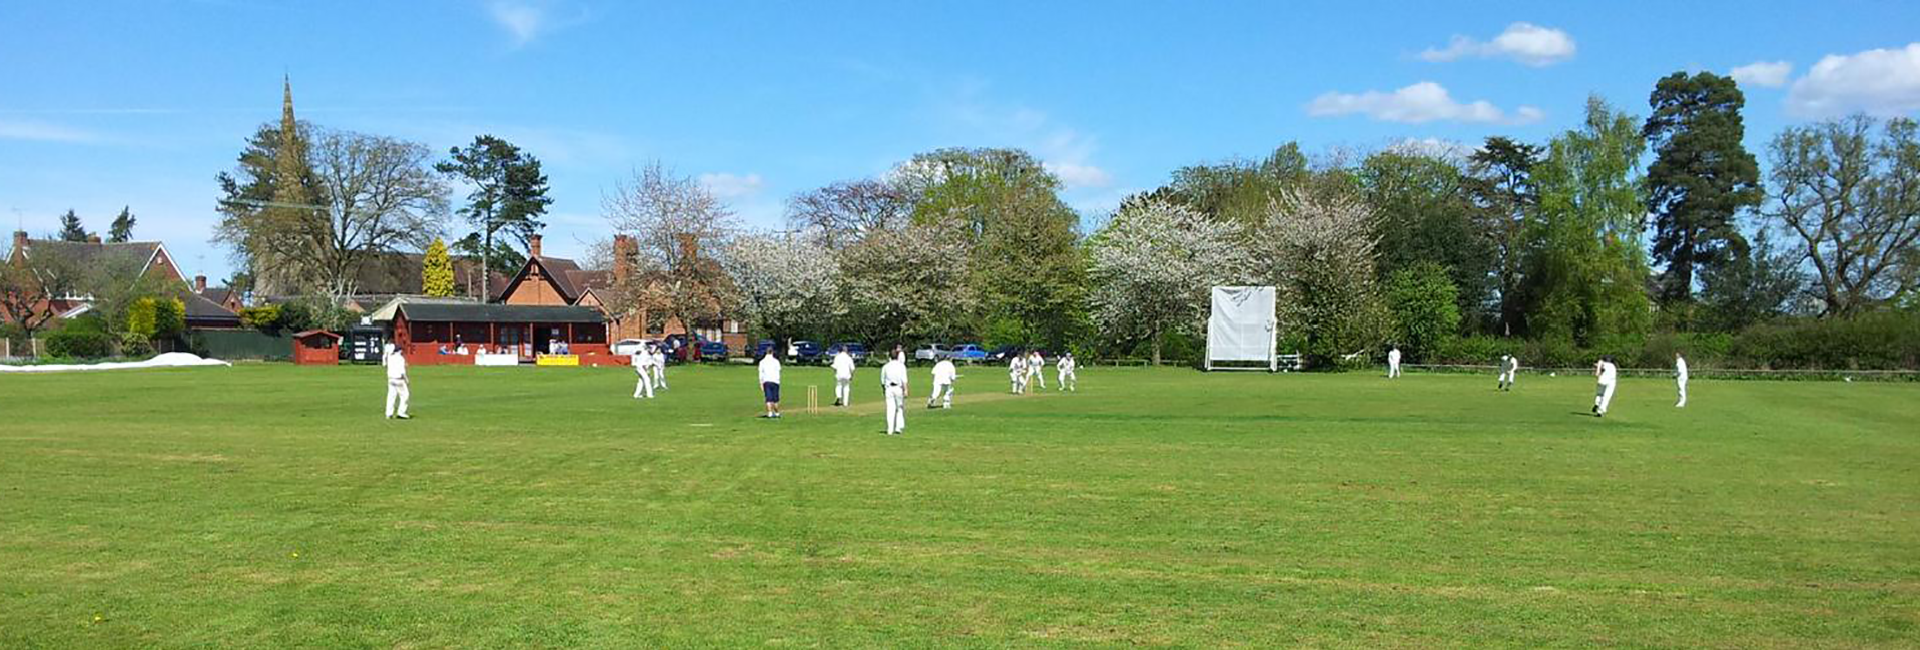 Church Eaton Cricket Club